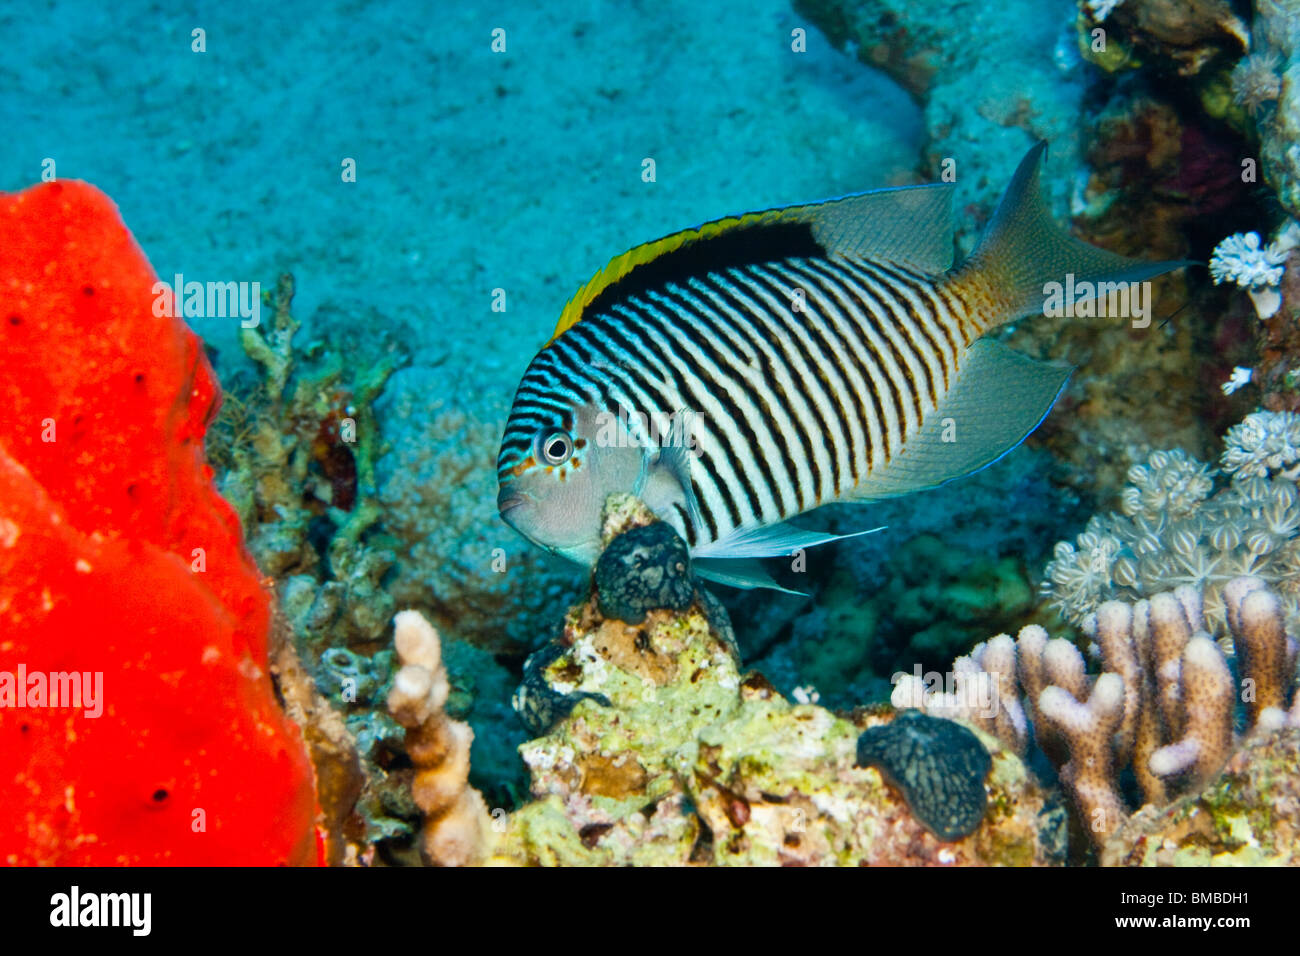 Zebra angelfish (Genicanthus caudovittatus) Stock Photo